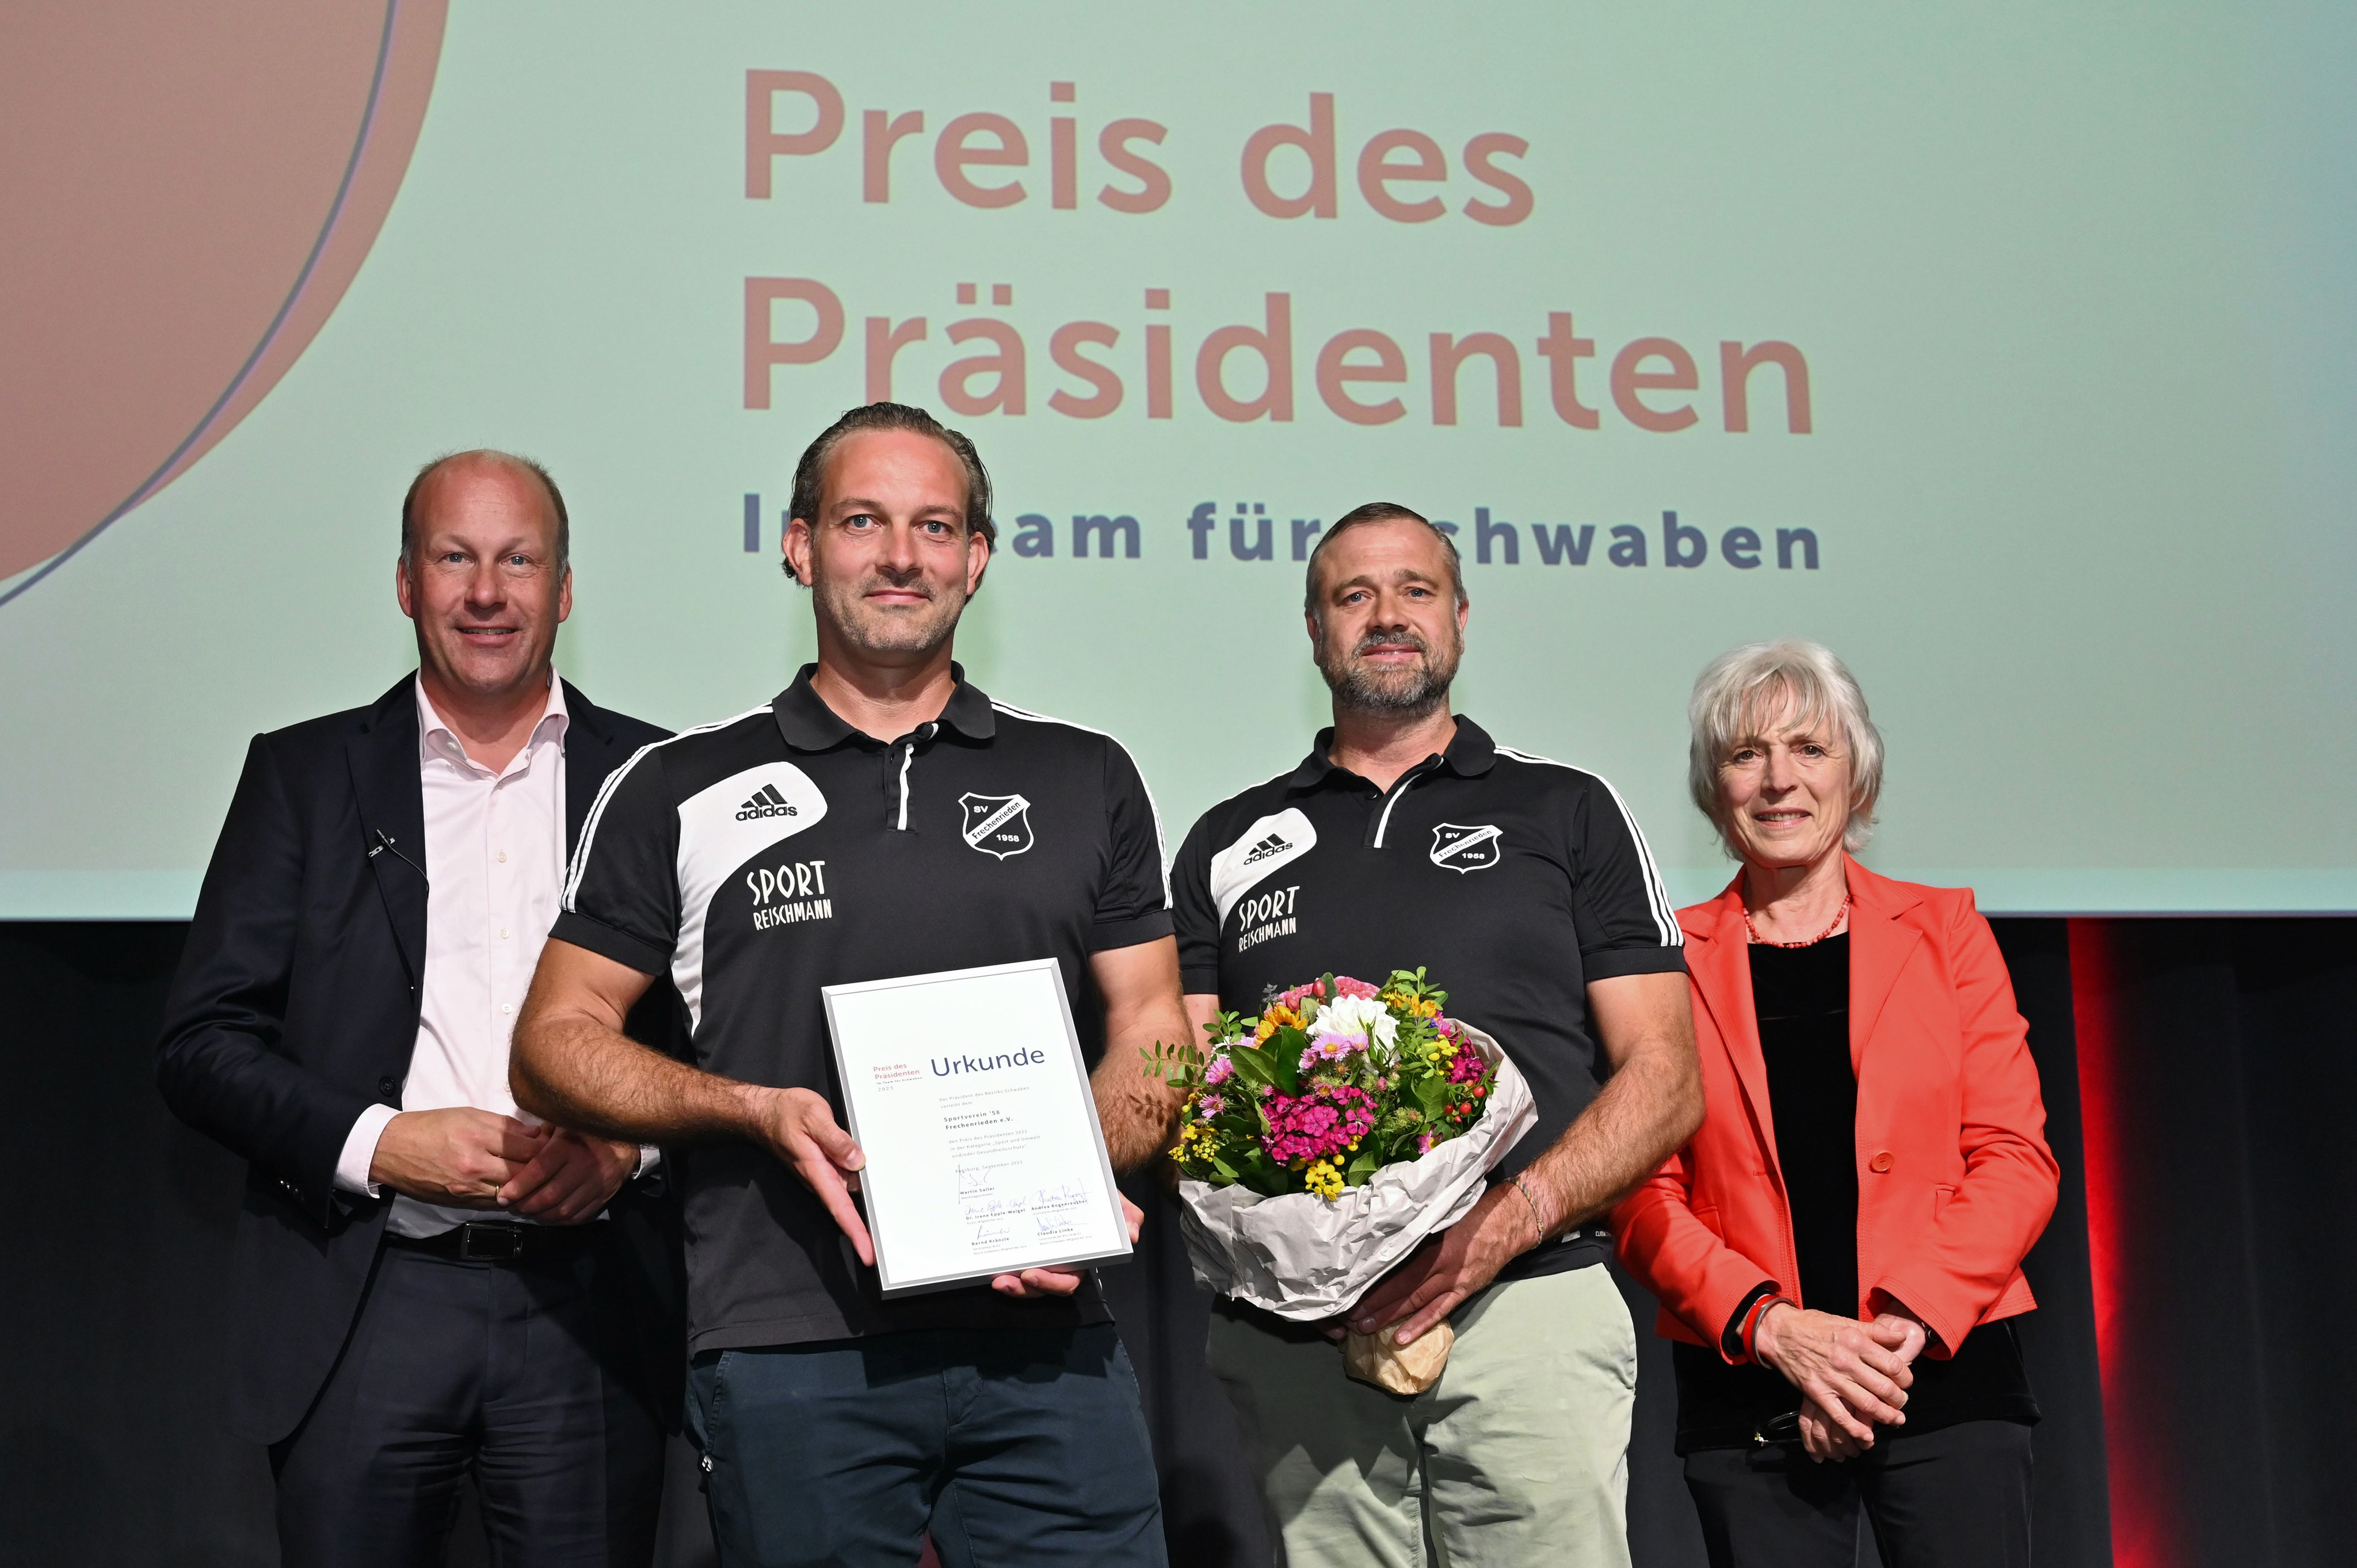 Preis des Präsidenten: DAV-Sektion Augsburg und Unterallgäuer Sportverein 58 Frechenrieden ausgezeichnet